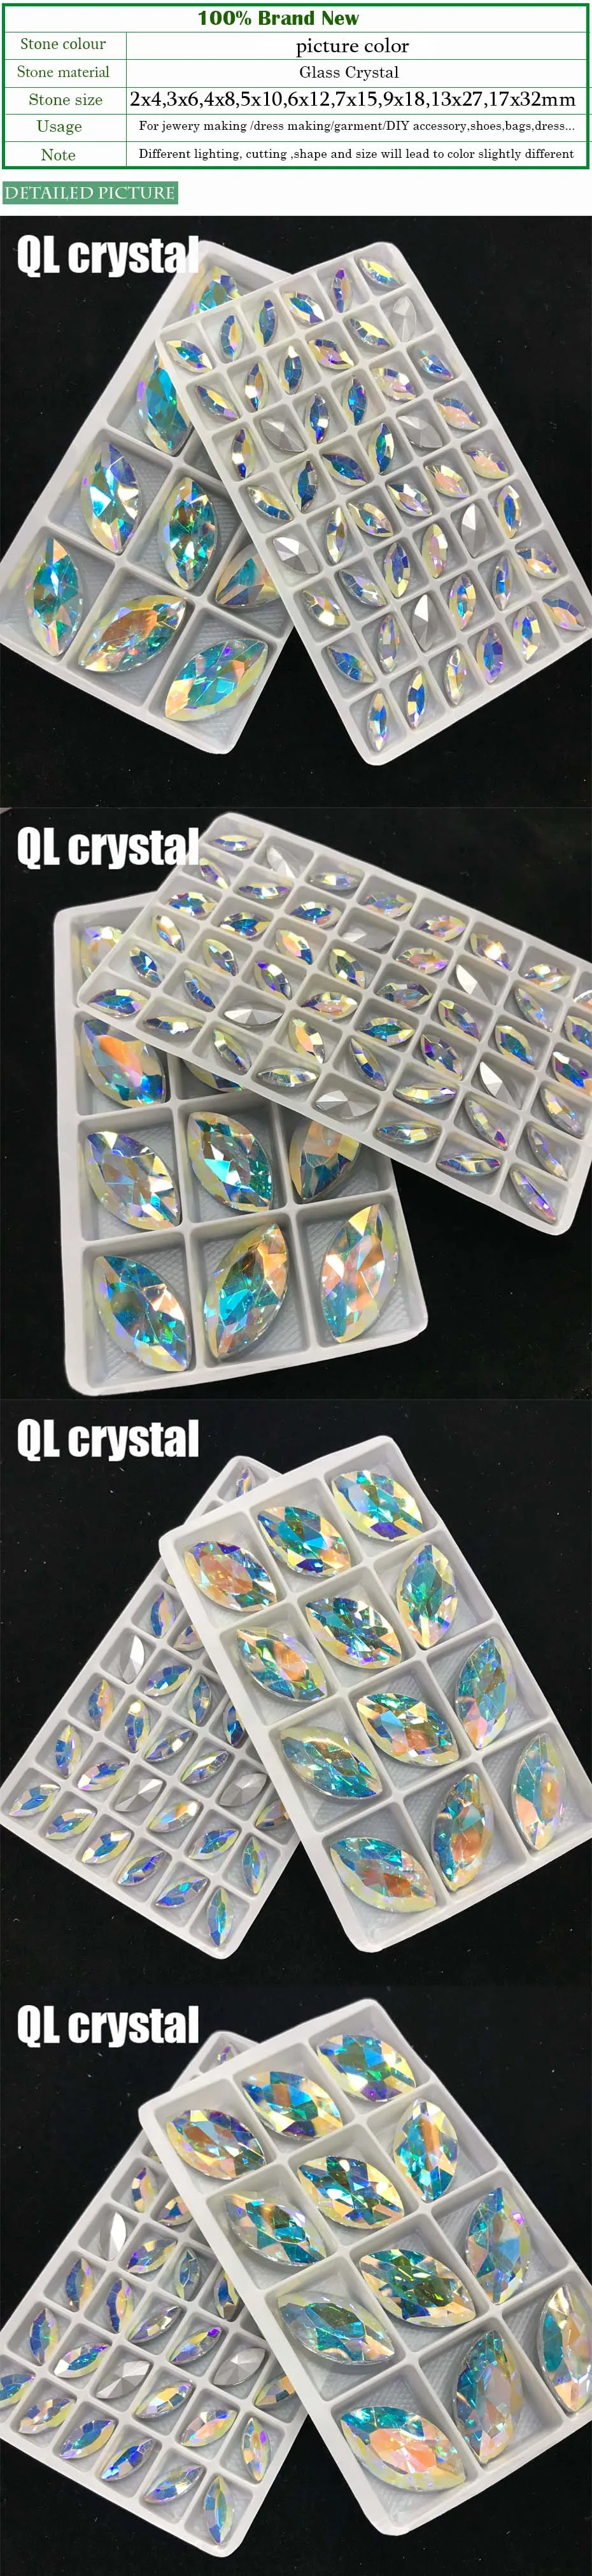 QL кристалл все размеры Navette Pointback хрустальные стразы высокого качества для самостоятельного изготовления ювелирных изделий Аксессуары